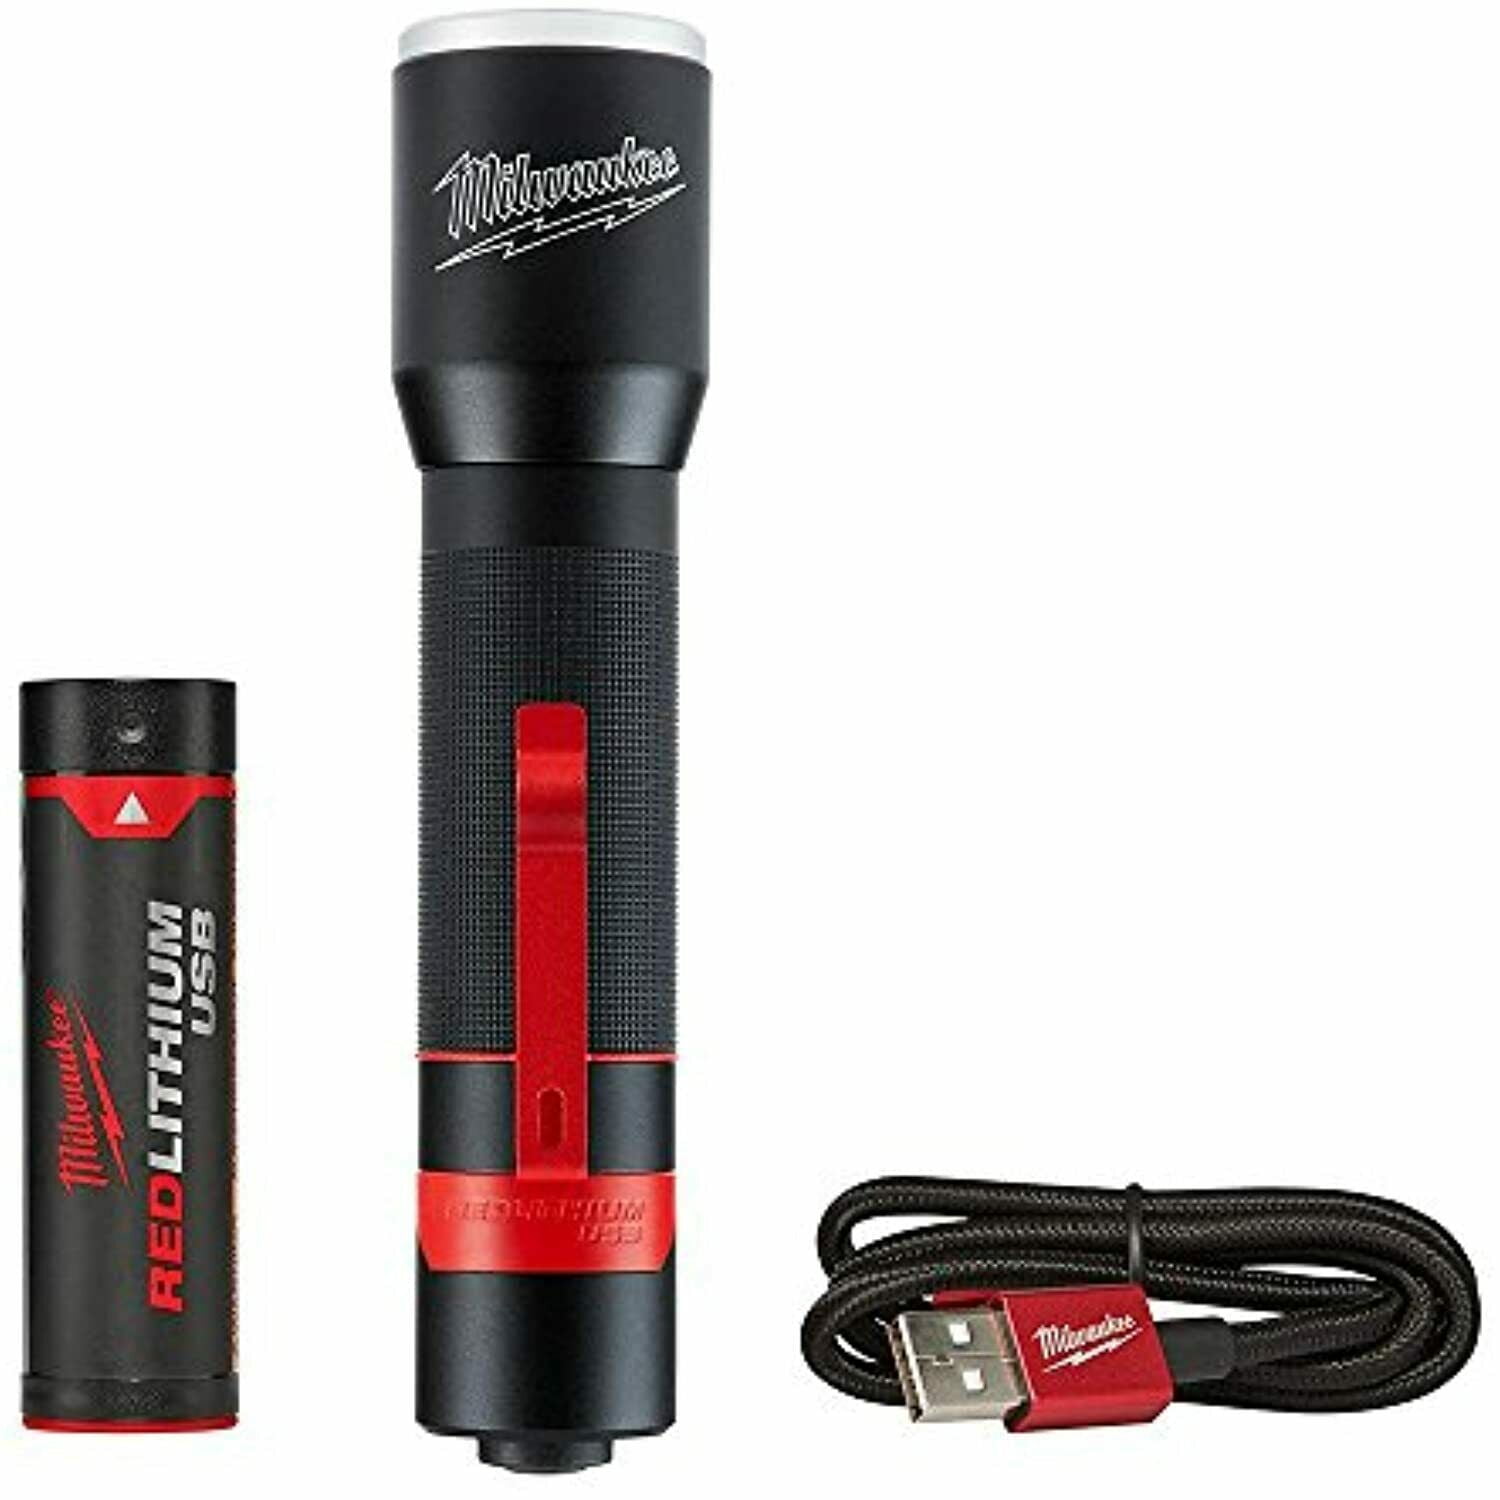 NEW MILWAUKEE 700-Lumen LED USB Rechargeable Aluminum Flashlight 2110-21 